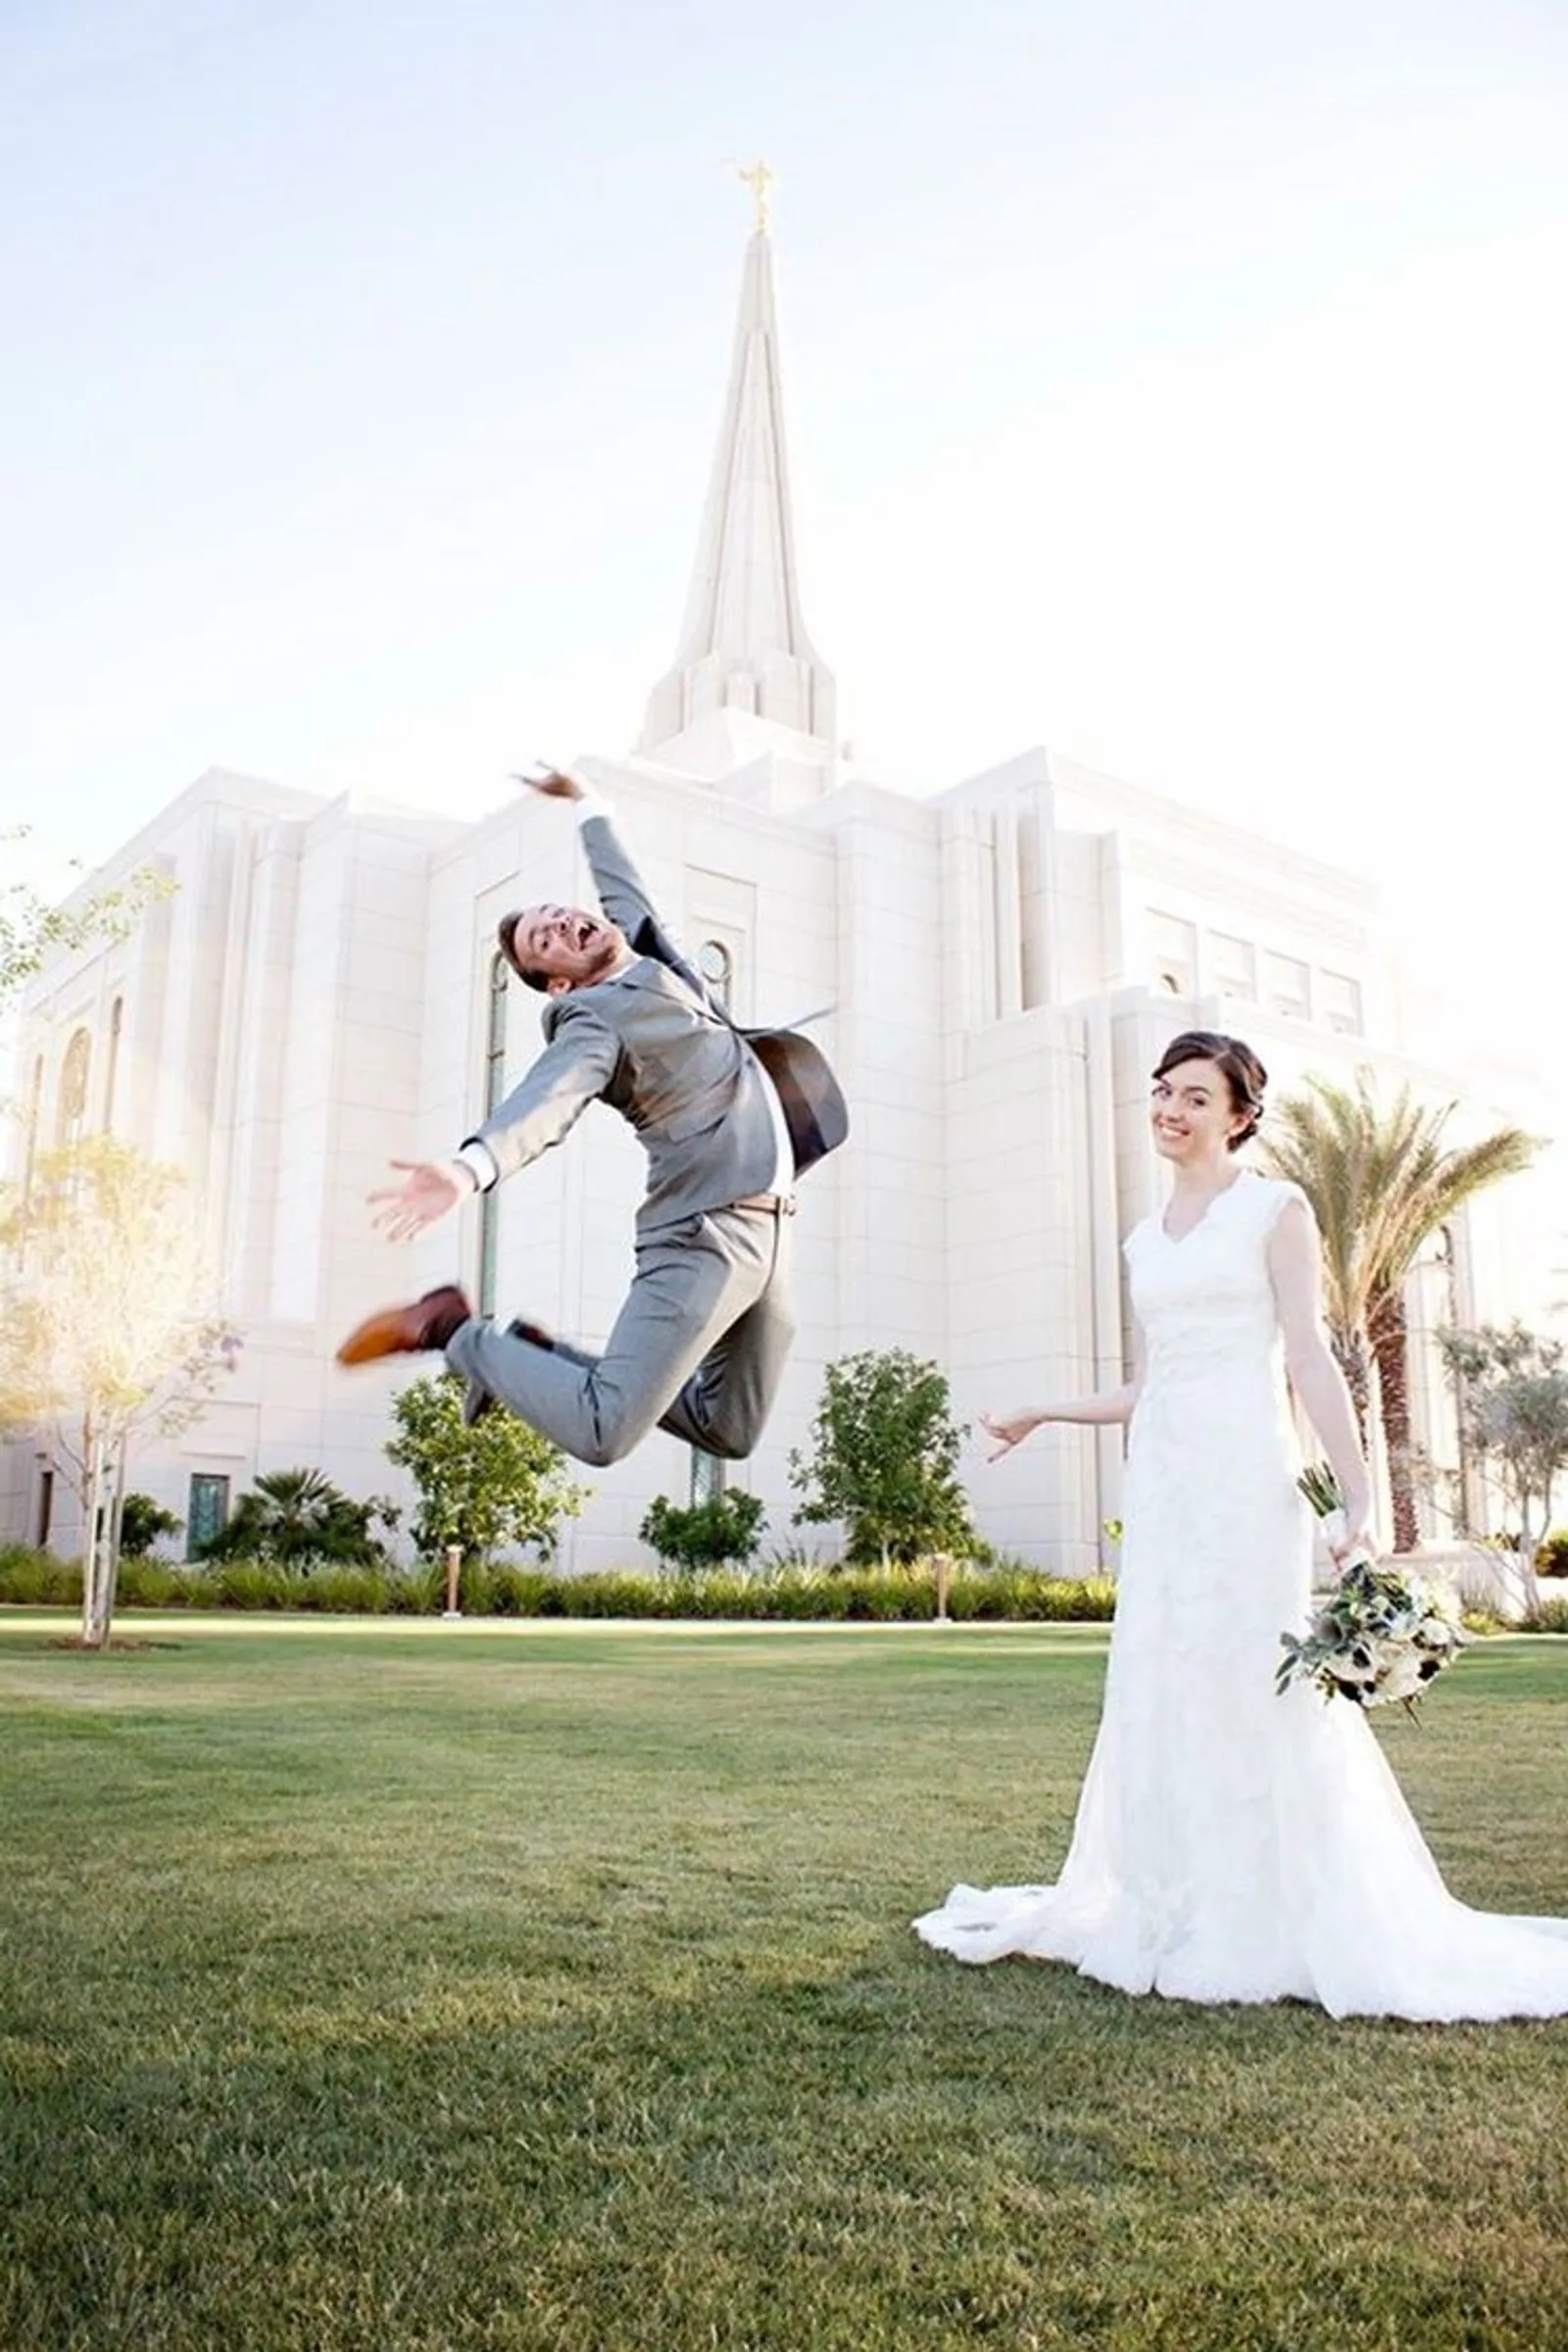 Gagal Romantis! 15 Foto Pernikahan Ini Justru Bikin Ketawa